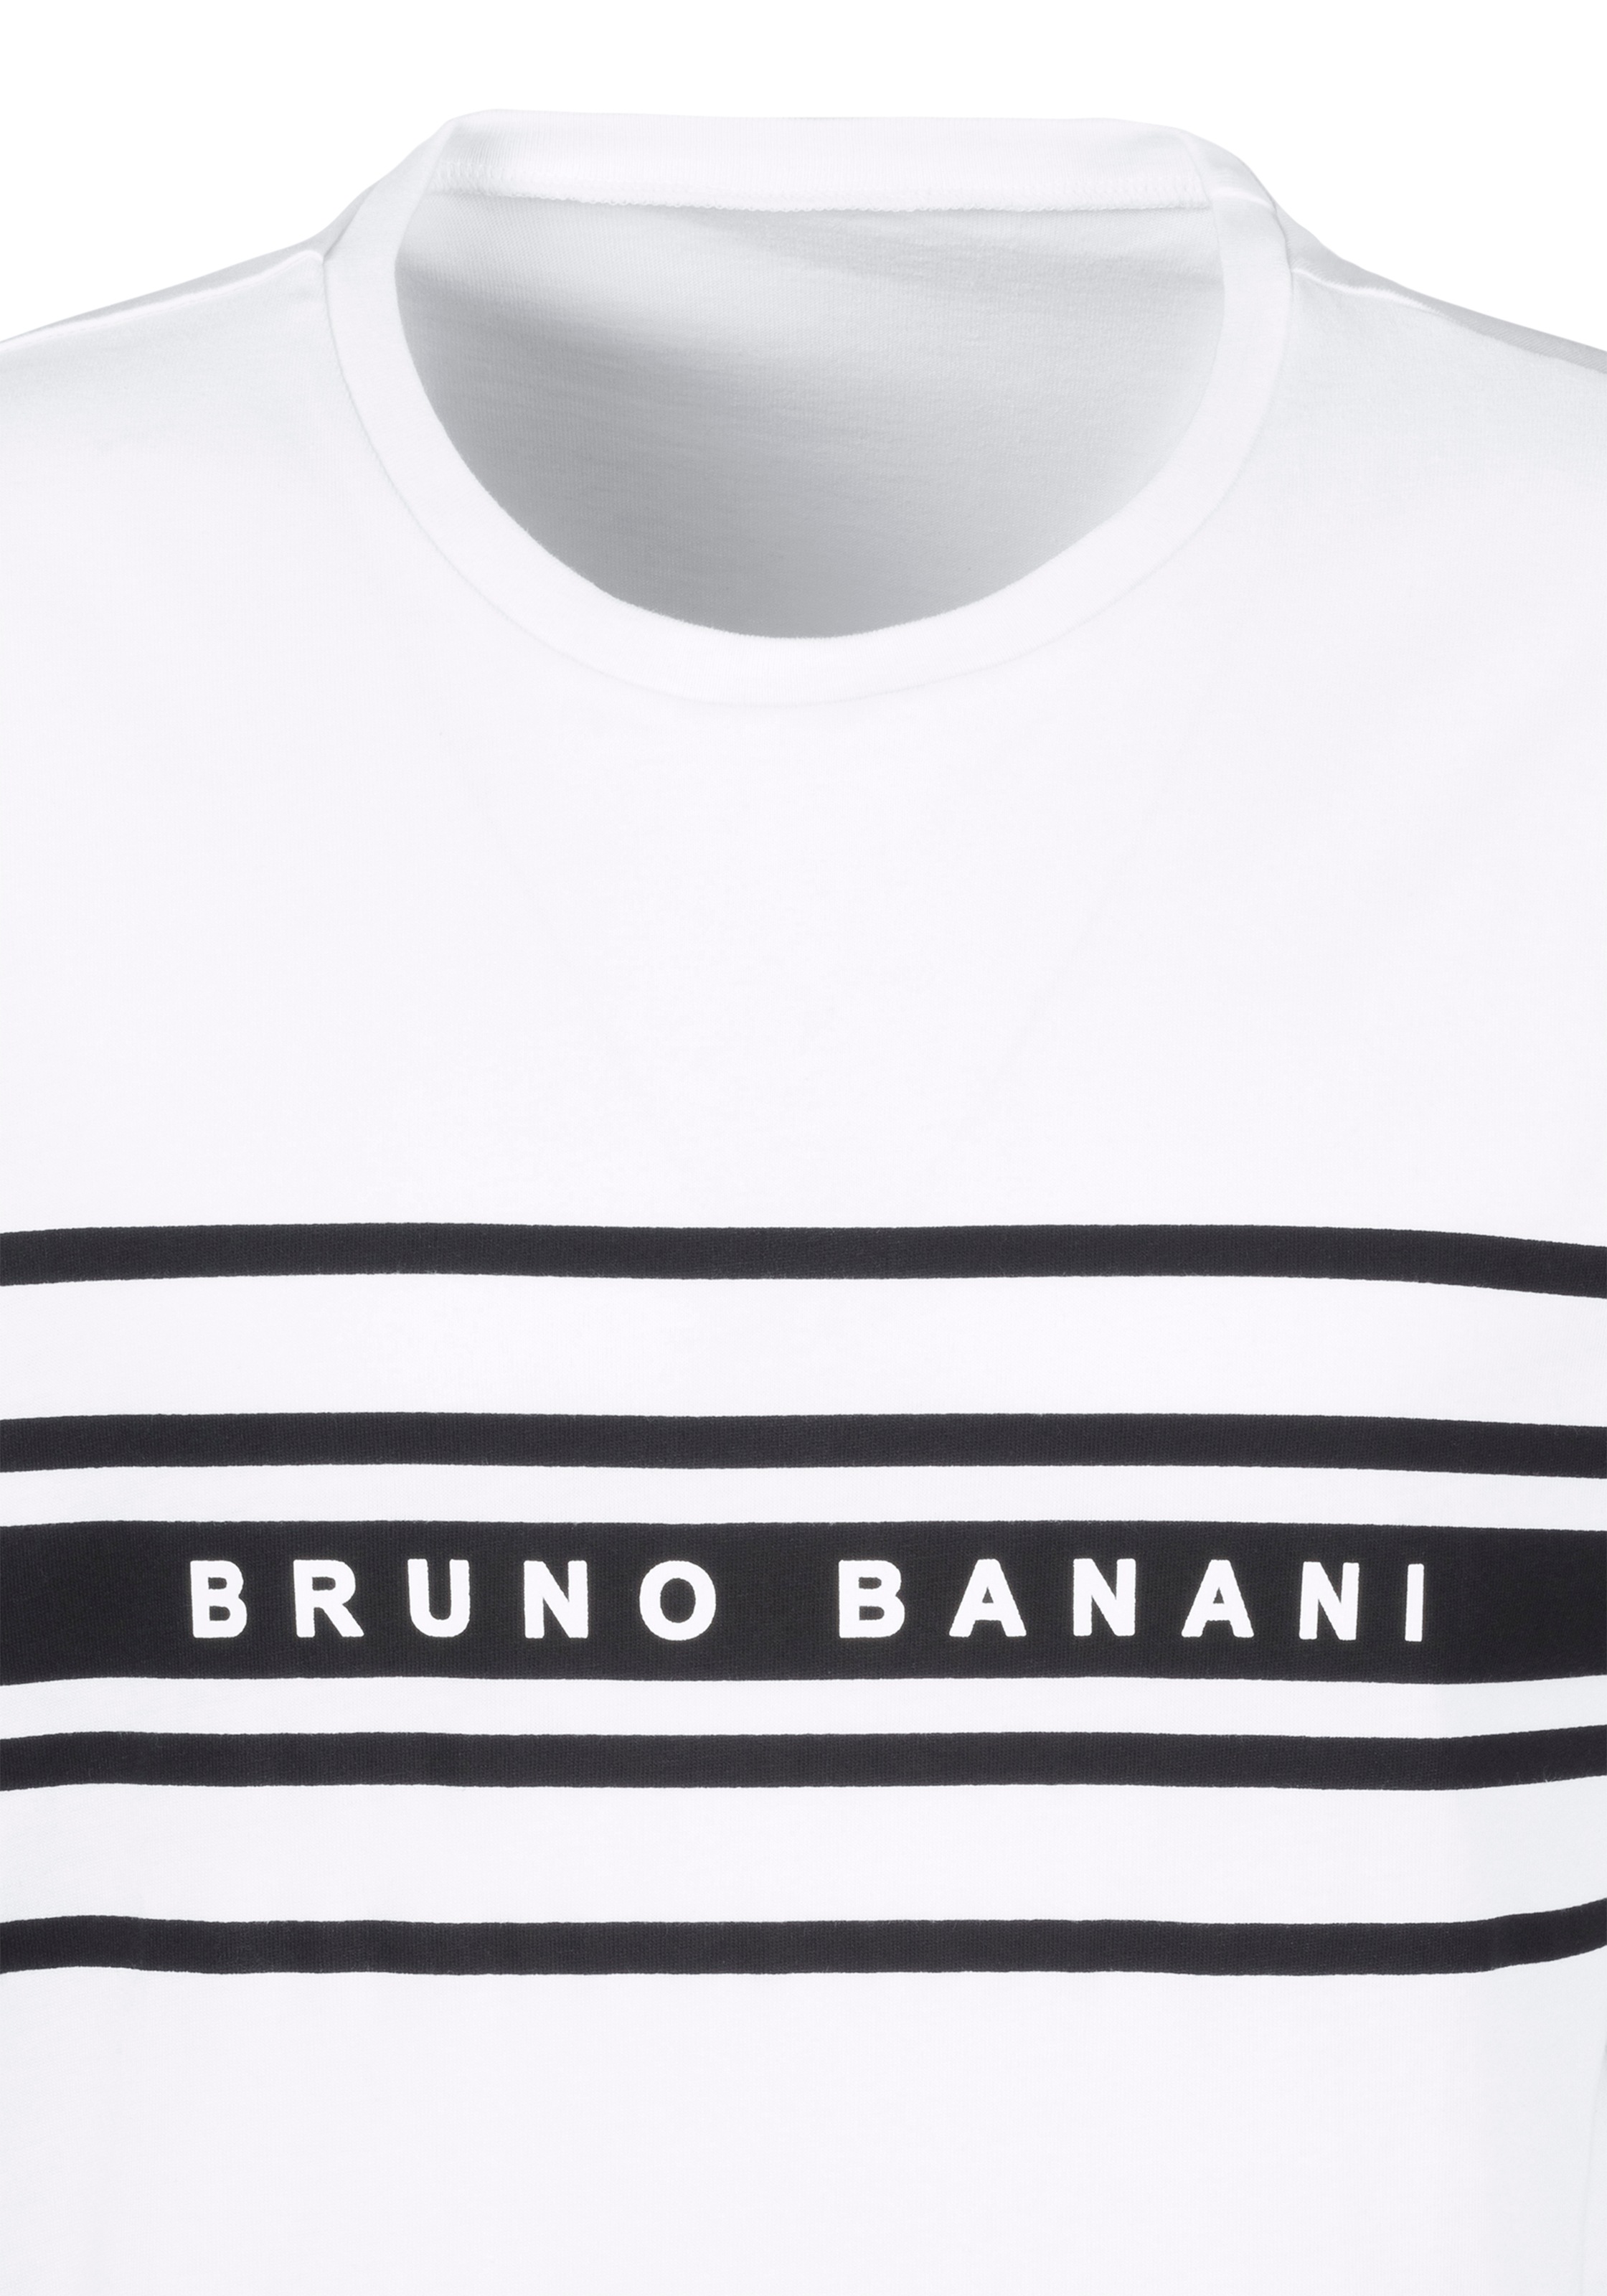 Bruno Banani Shorty, (2 tlg., online mit Unterwäsche | Lingerie LASCANA & Logodruck kaufen 1 Stück), Bademode, »